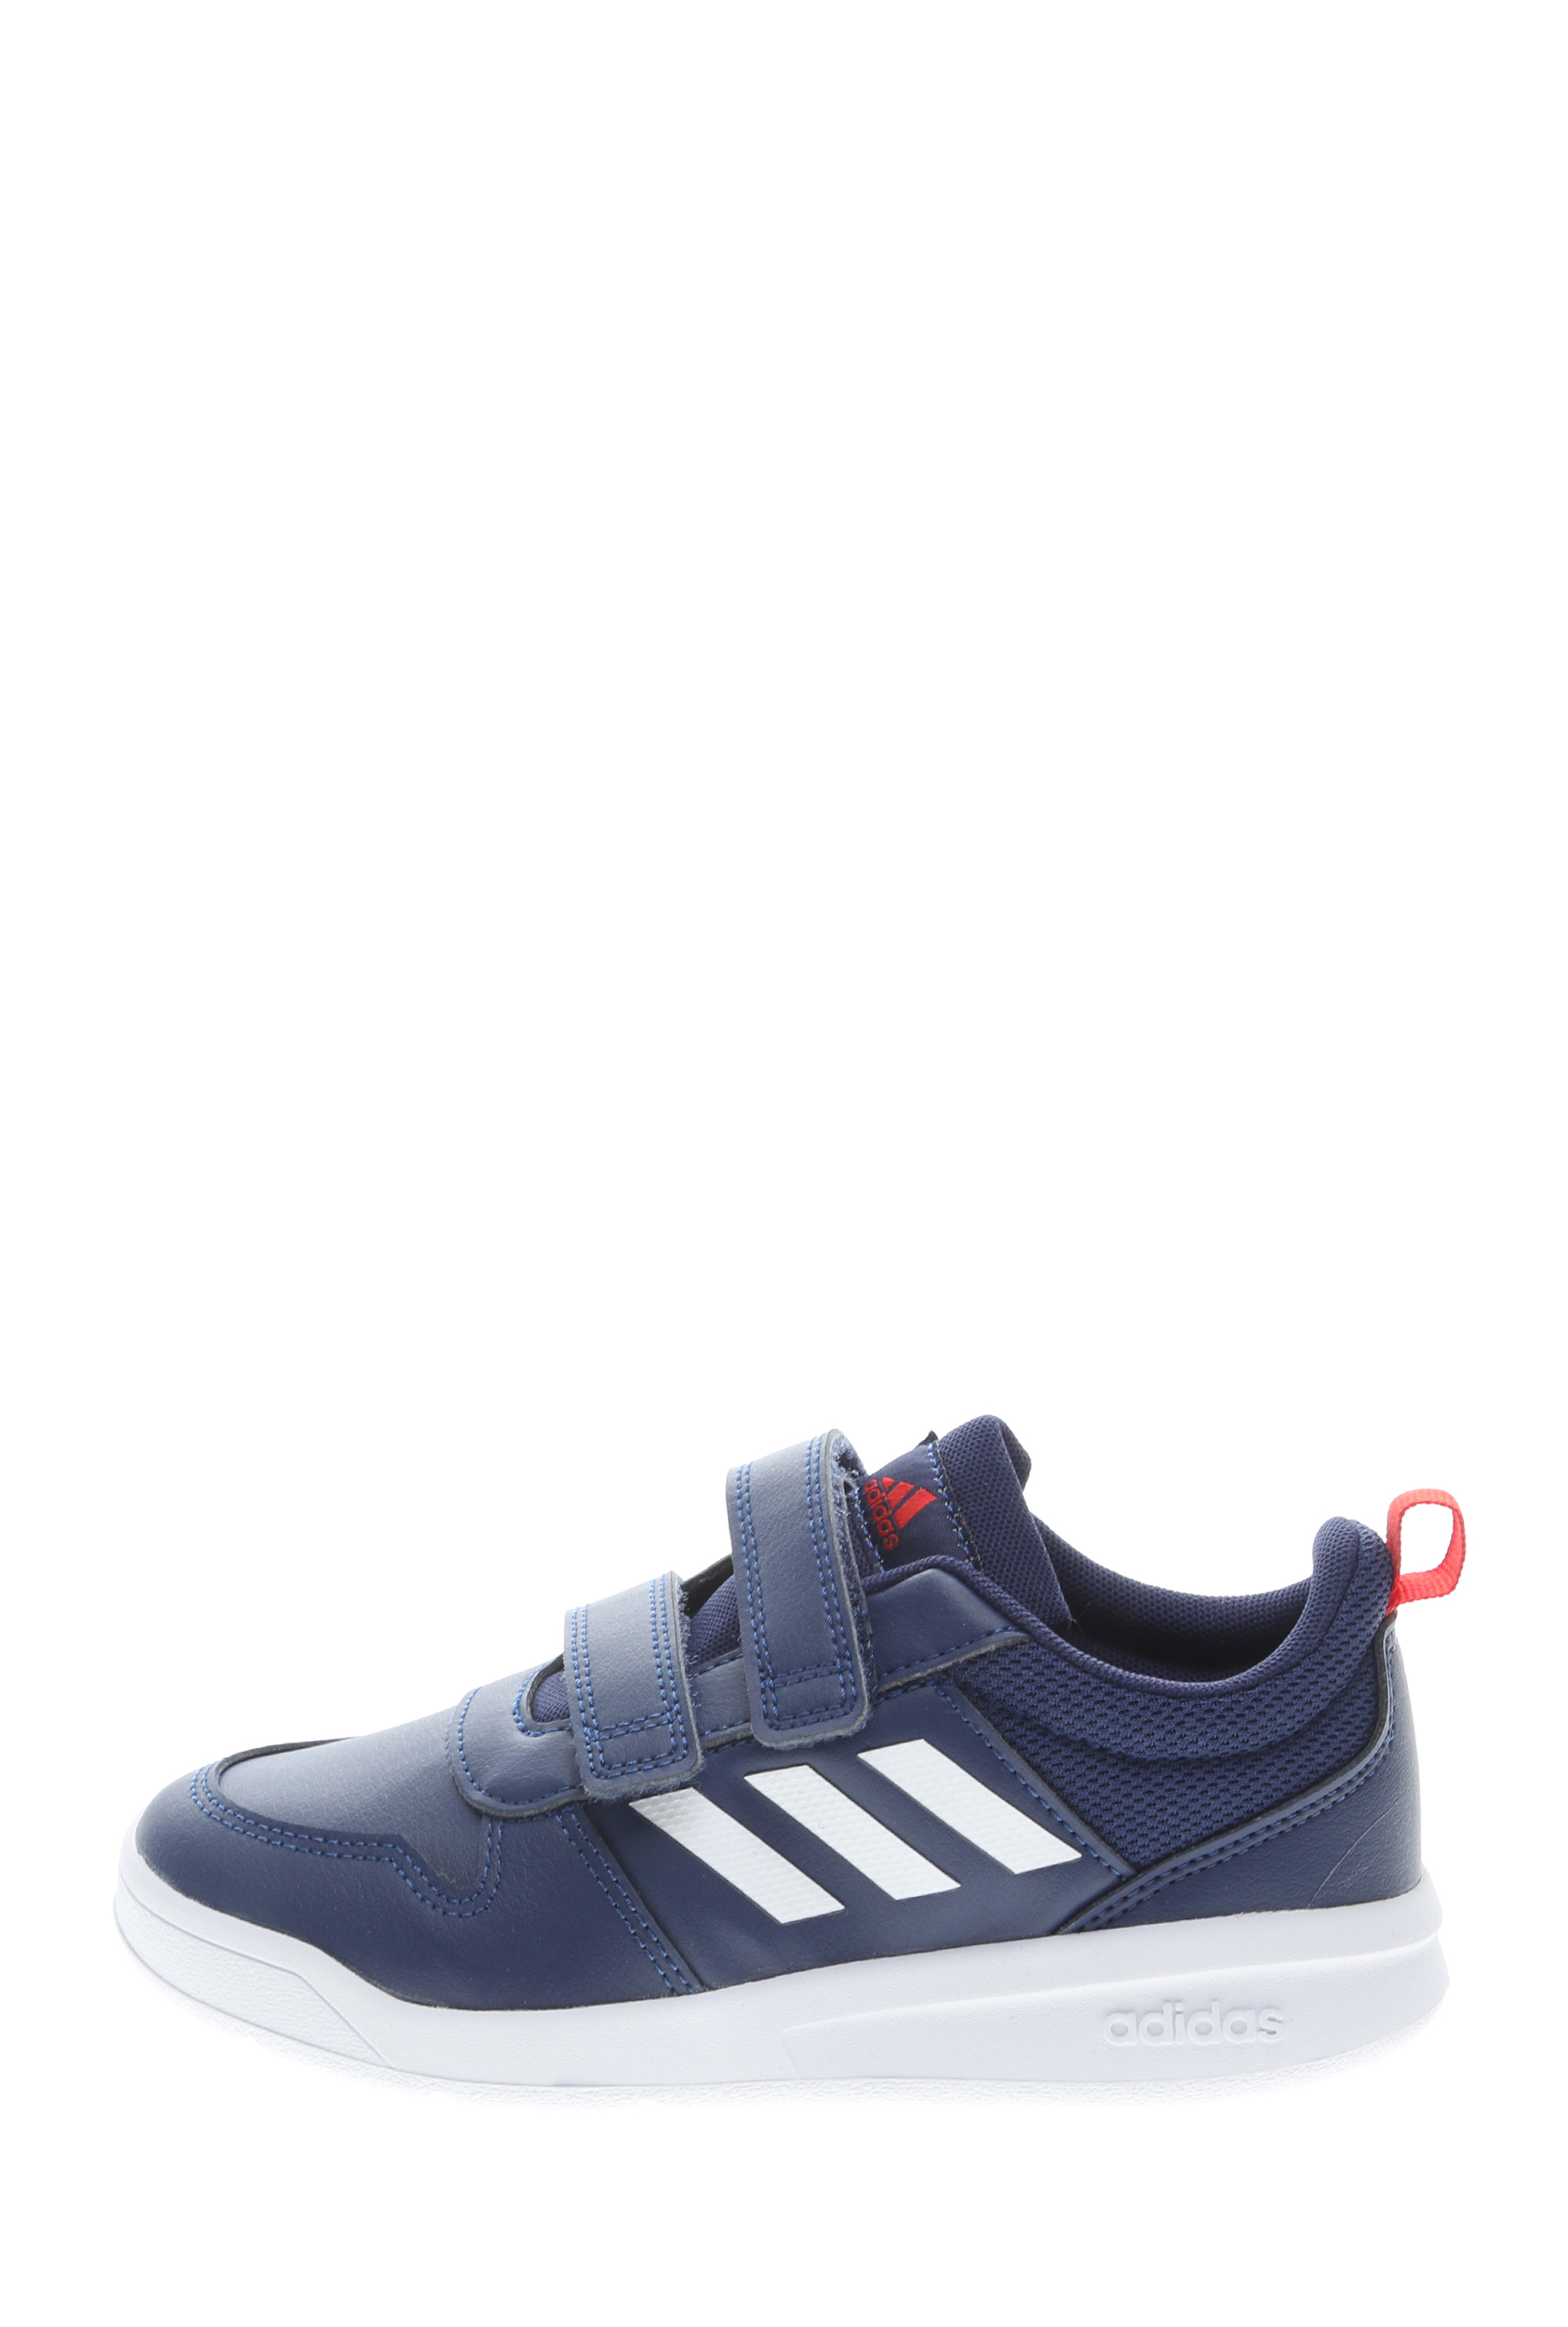 Παιδικά/Boys/Παπούτσια/Αθλητικά adidas Performance - Παιδικά παπούτσια adidas Performance VECTOR C μπλε